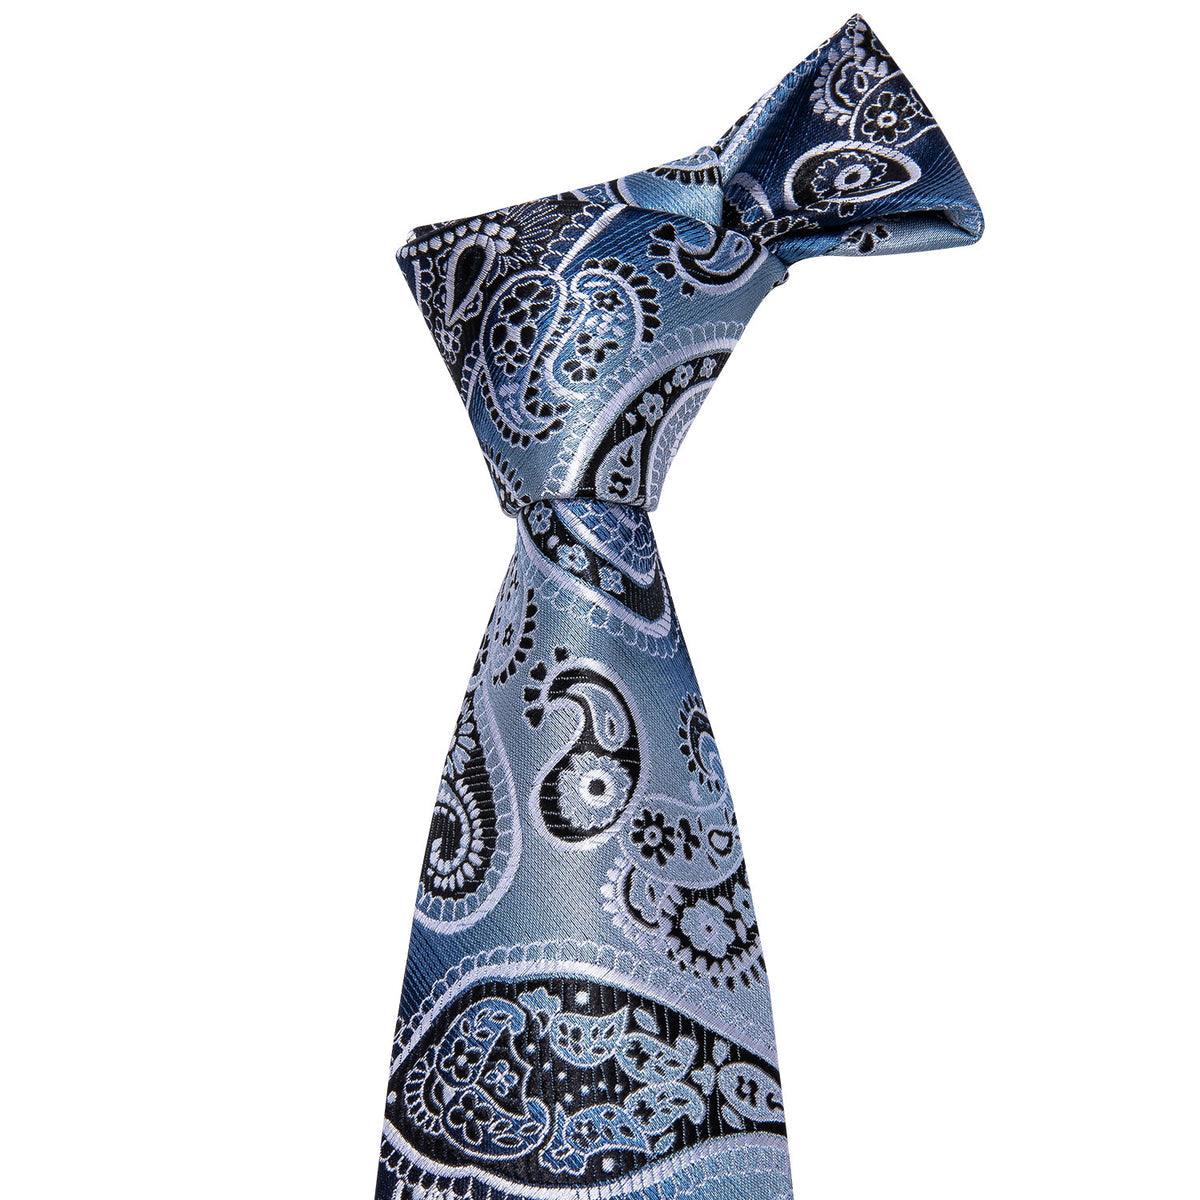 Blue Paisley Silk Tie Pocket Square Cufflink Set - STYLETIE